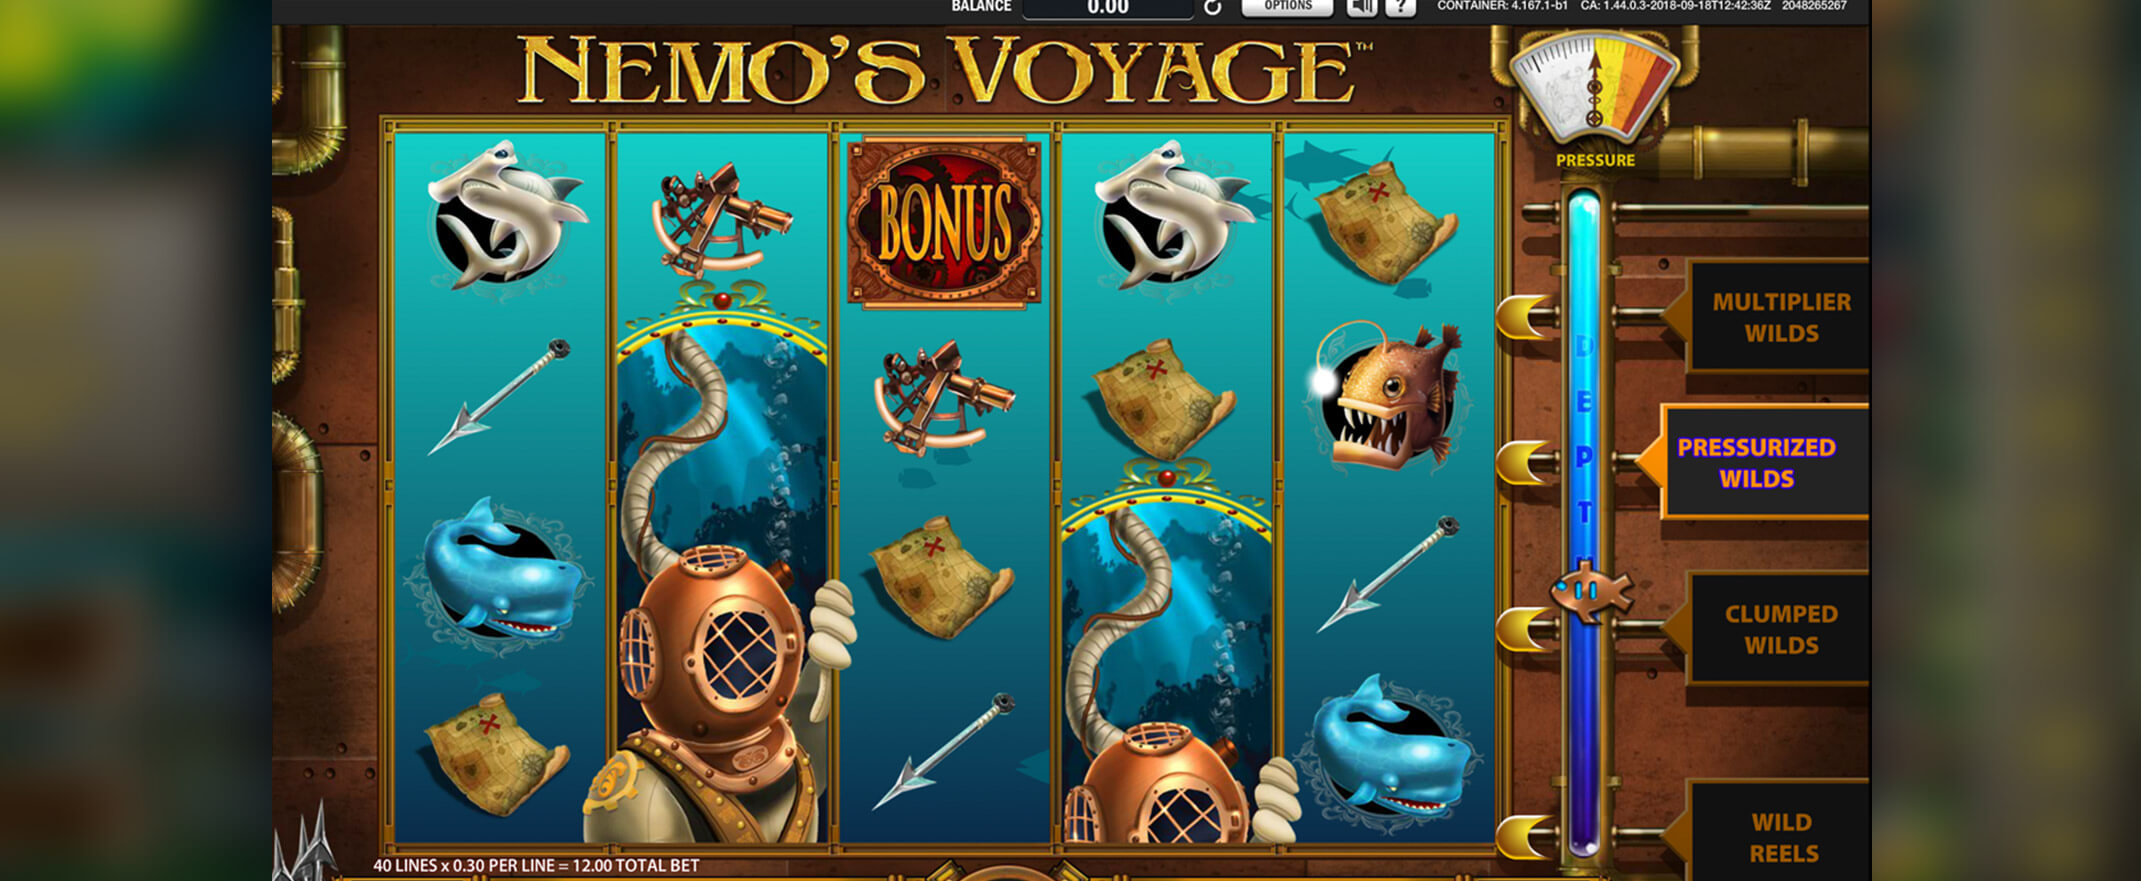 Nemo’s Voyage Spielautomat von Williams Interactive